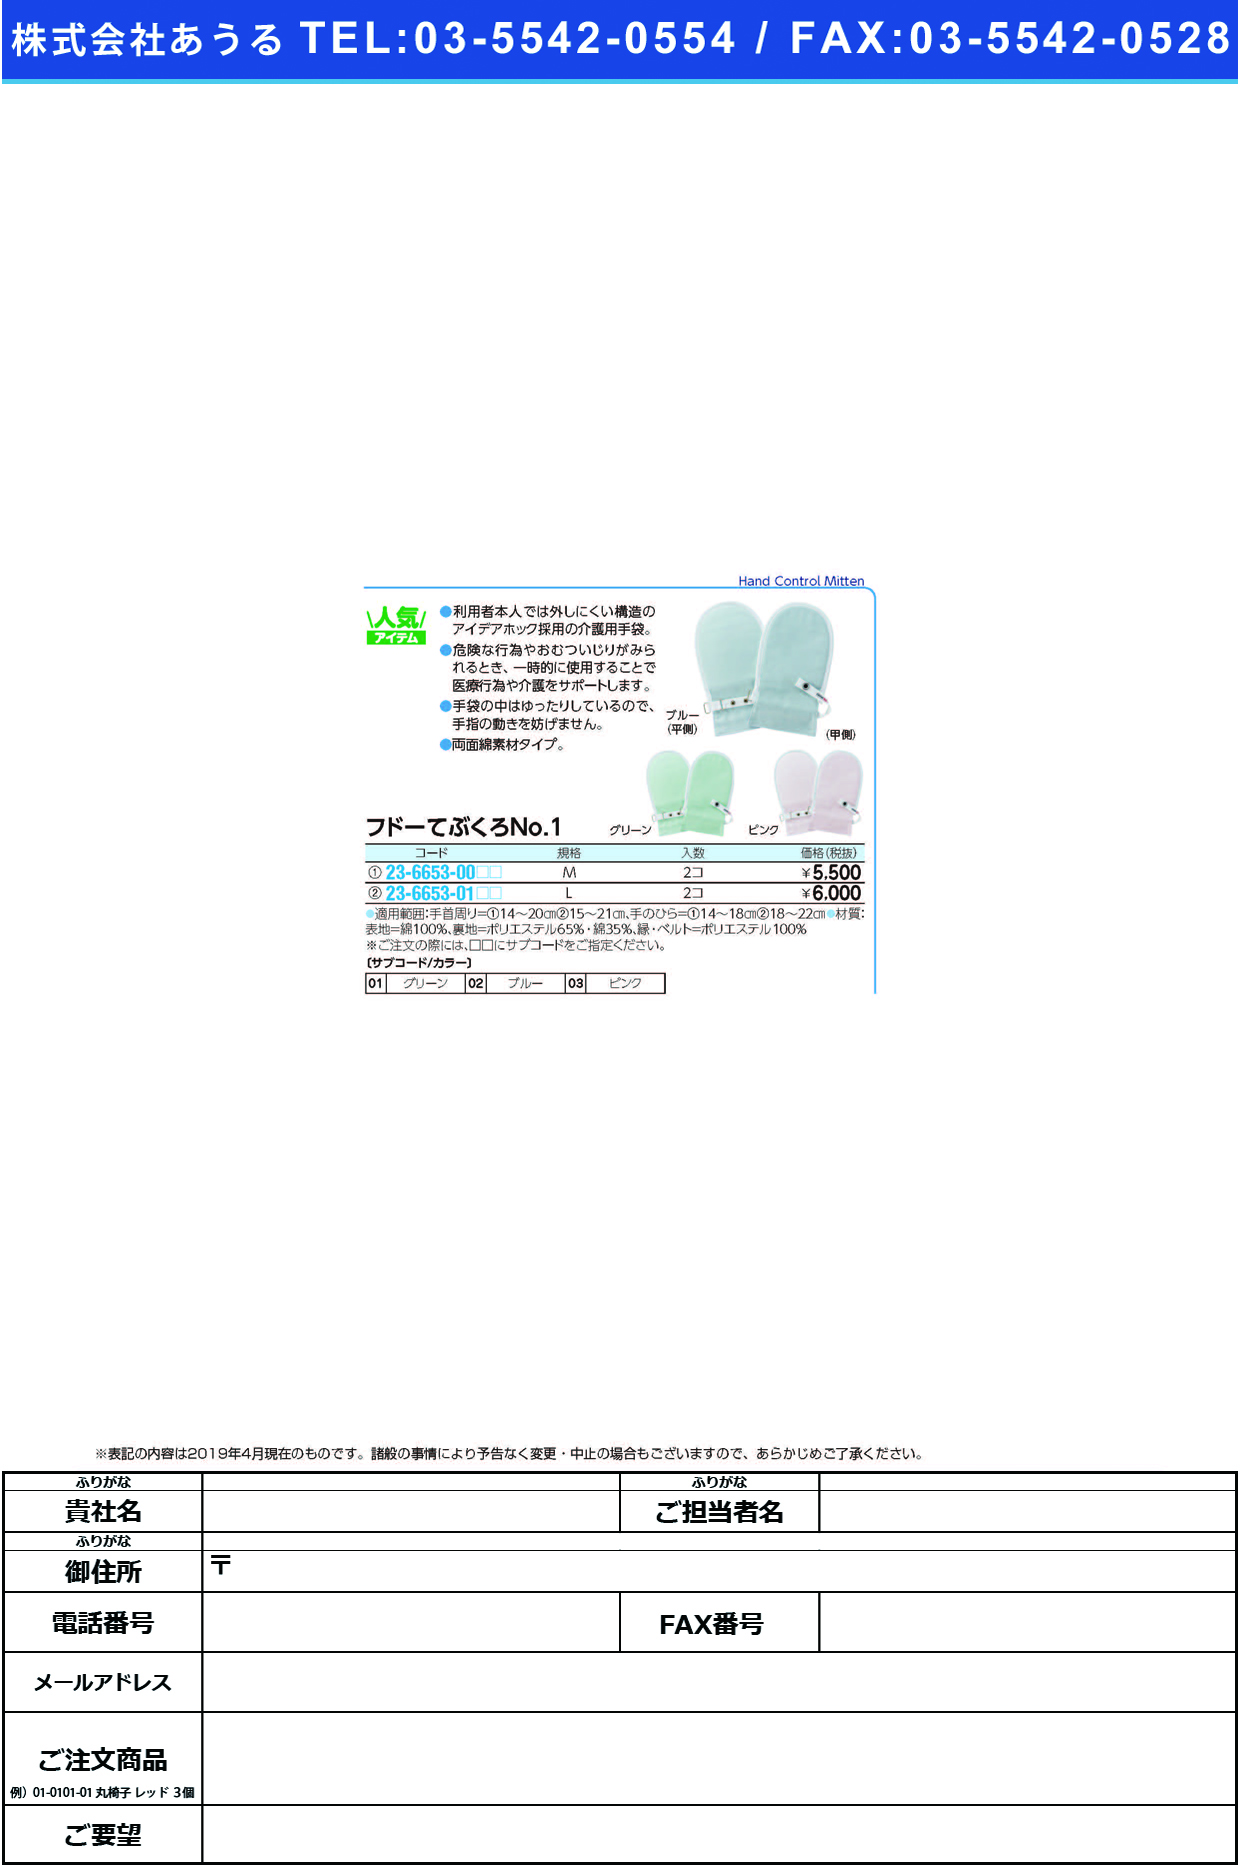 (23-6653-01)フドーてぶくろＮｏ．１ L(2ﾏｲｲﾘ) ﾌﾄﾞｰﾃﾌﾞｸﾛNO1 ピンク【1双単位】【2019年カタログ商品】